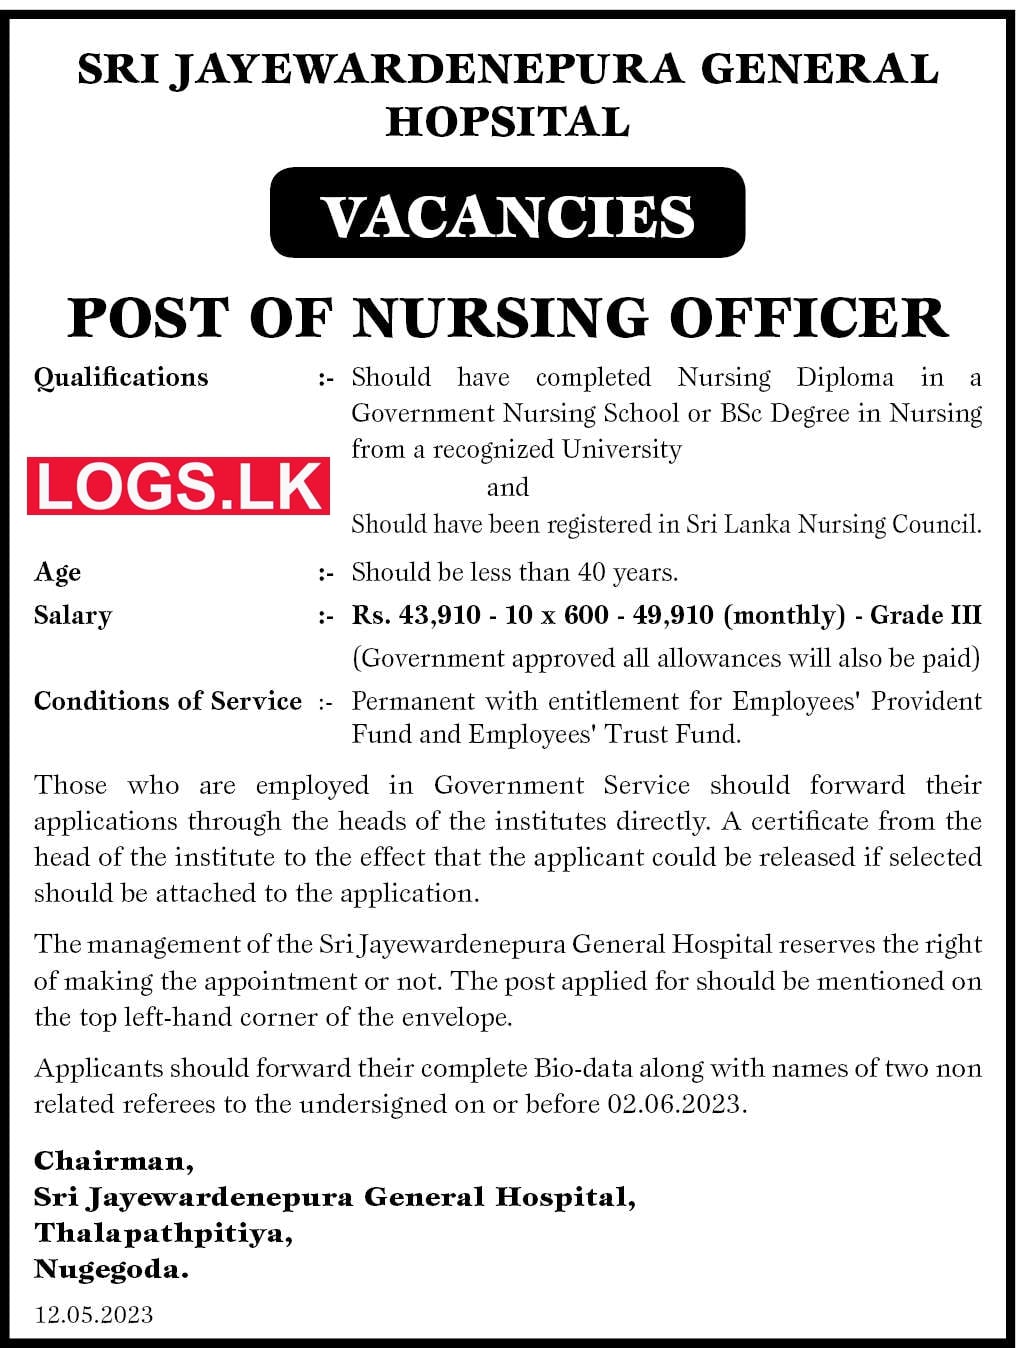 SJGH Job Vacancies for Nursing Officer